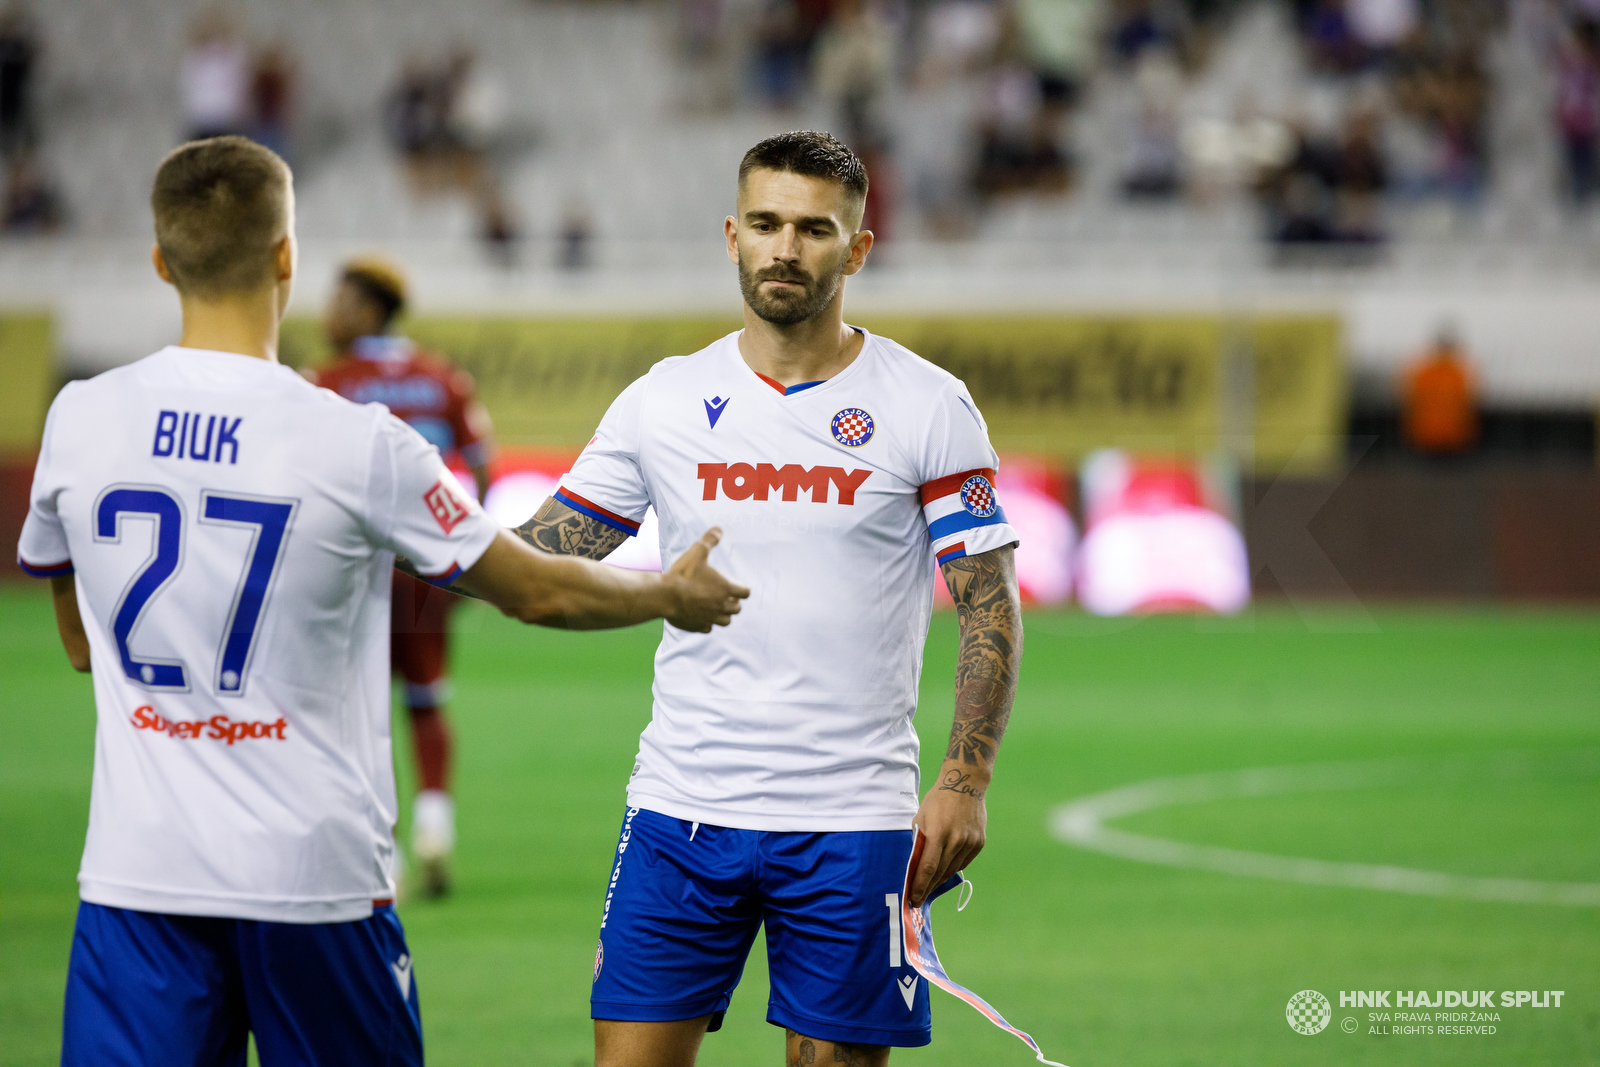 Nogometni susret visokog rizika između HNK Rijeka i HNK Hajduk Split - Glas  Istre